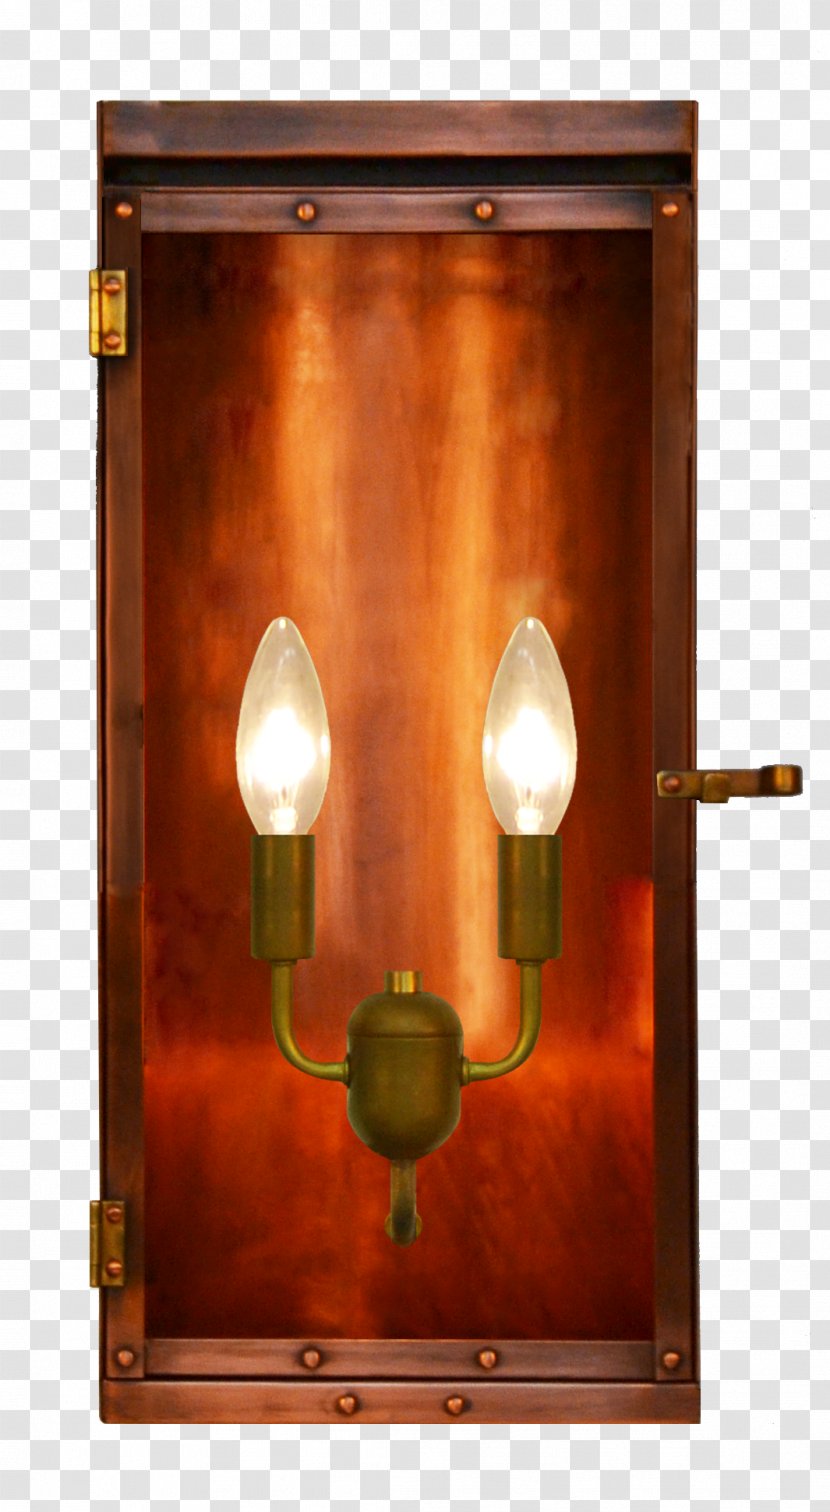 Lamp Gas Lighting Lantern Sconce Transparent PNG